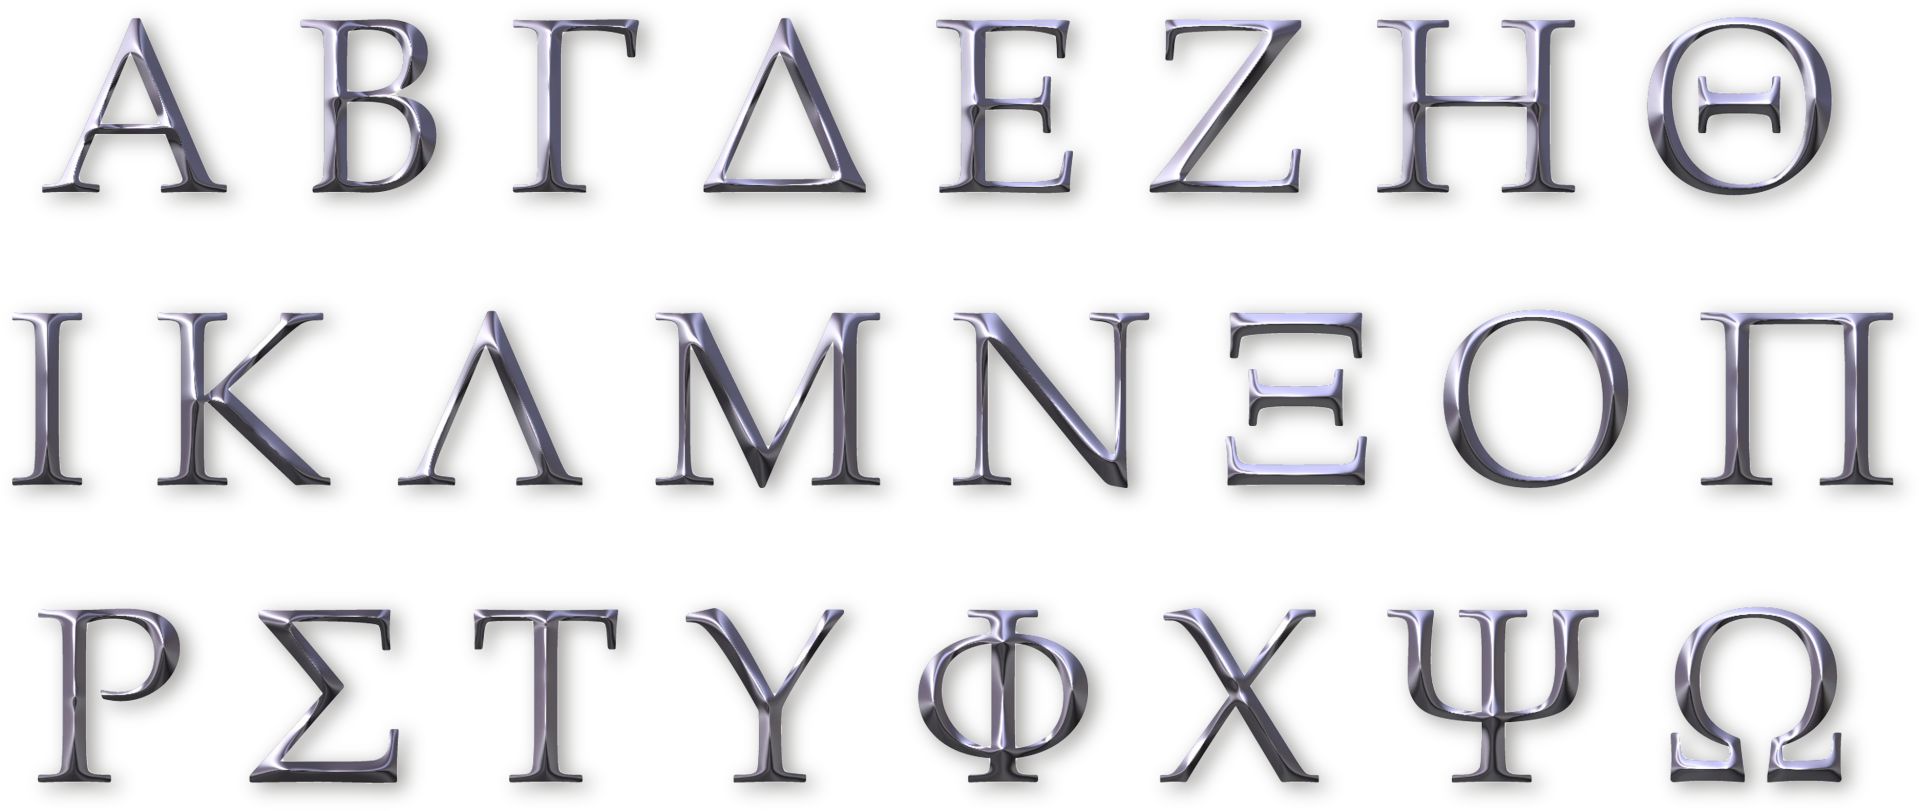 ძველი საბერძნეთი ბავშვებისთვის: ბერძნული ანბანი და ასოები